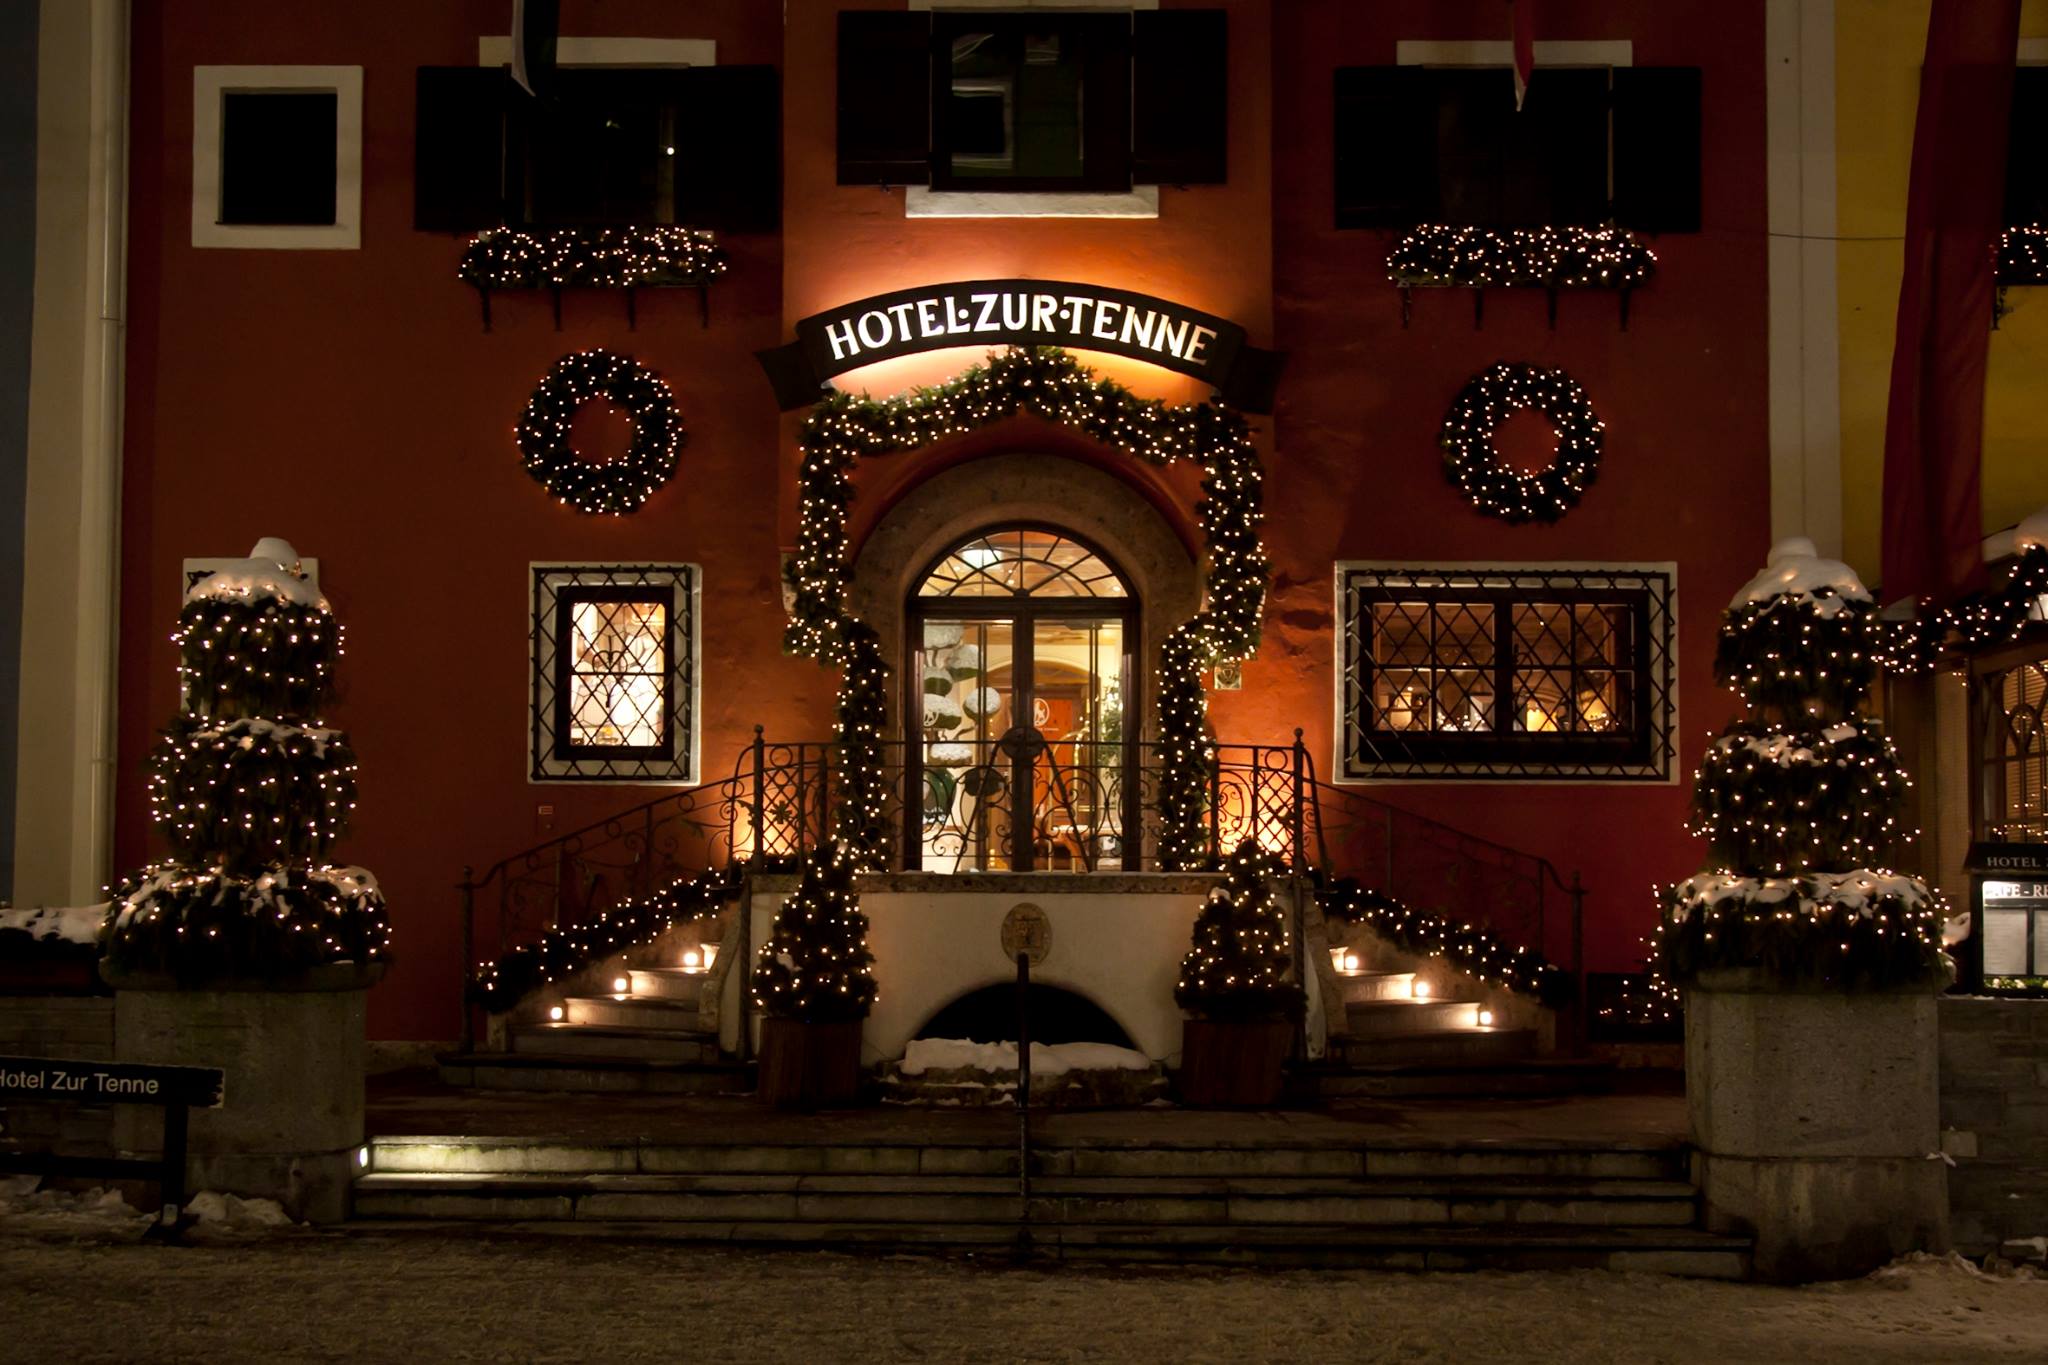 Hotel Zur Tenne